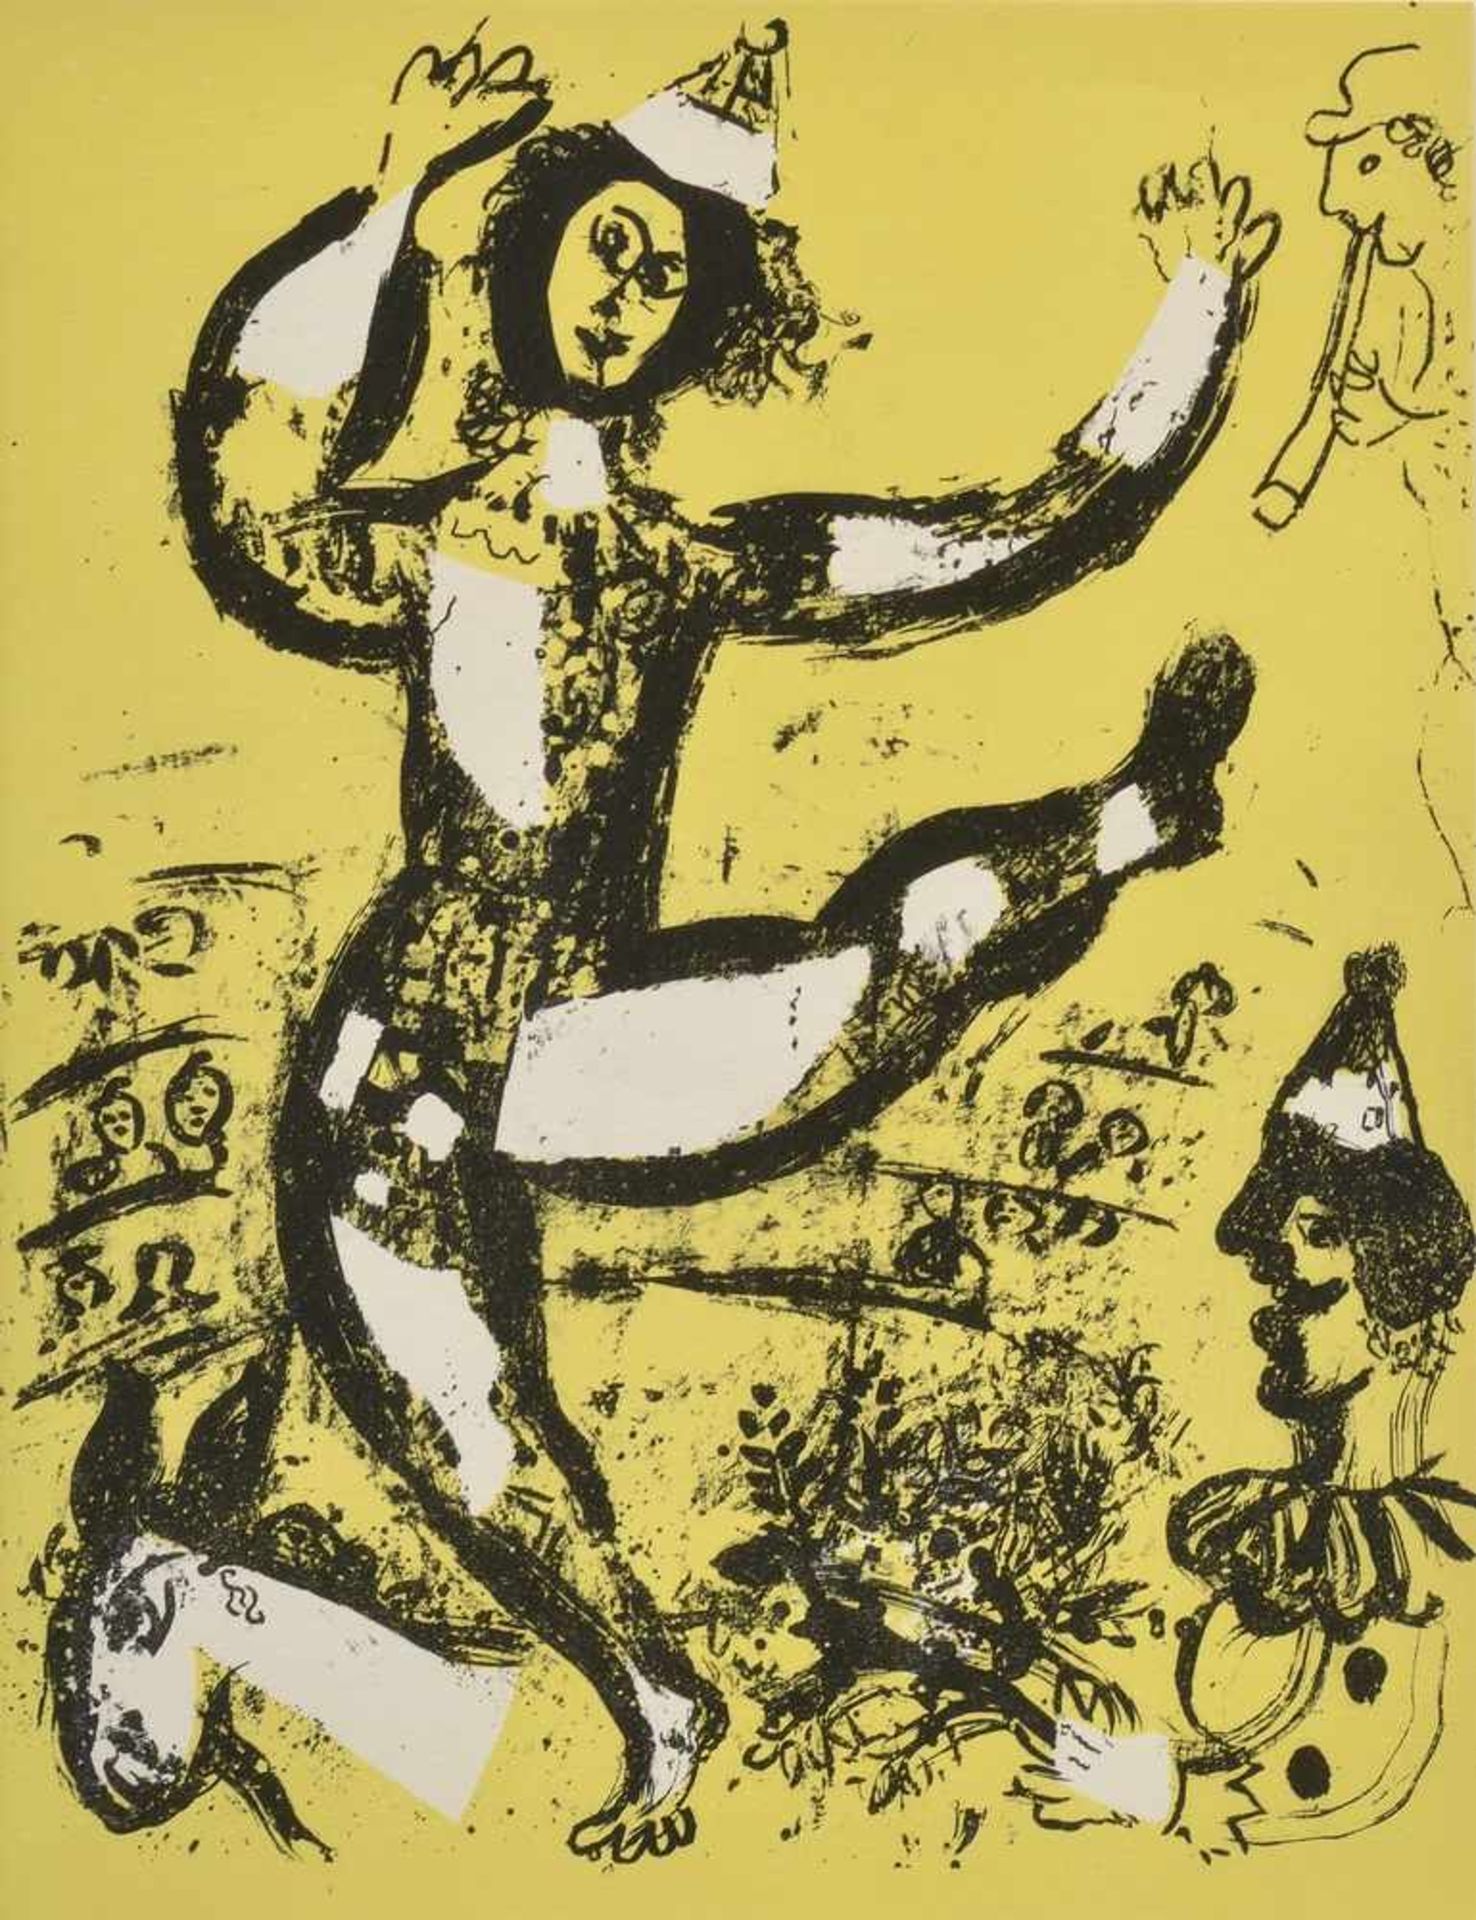 Chagall, Marc (1887-1985) "Cirque" 1960, Farblithographie, 32x24cm (m.R. 54,5x44cm)